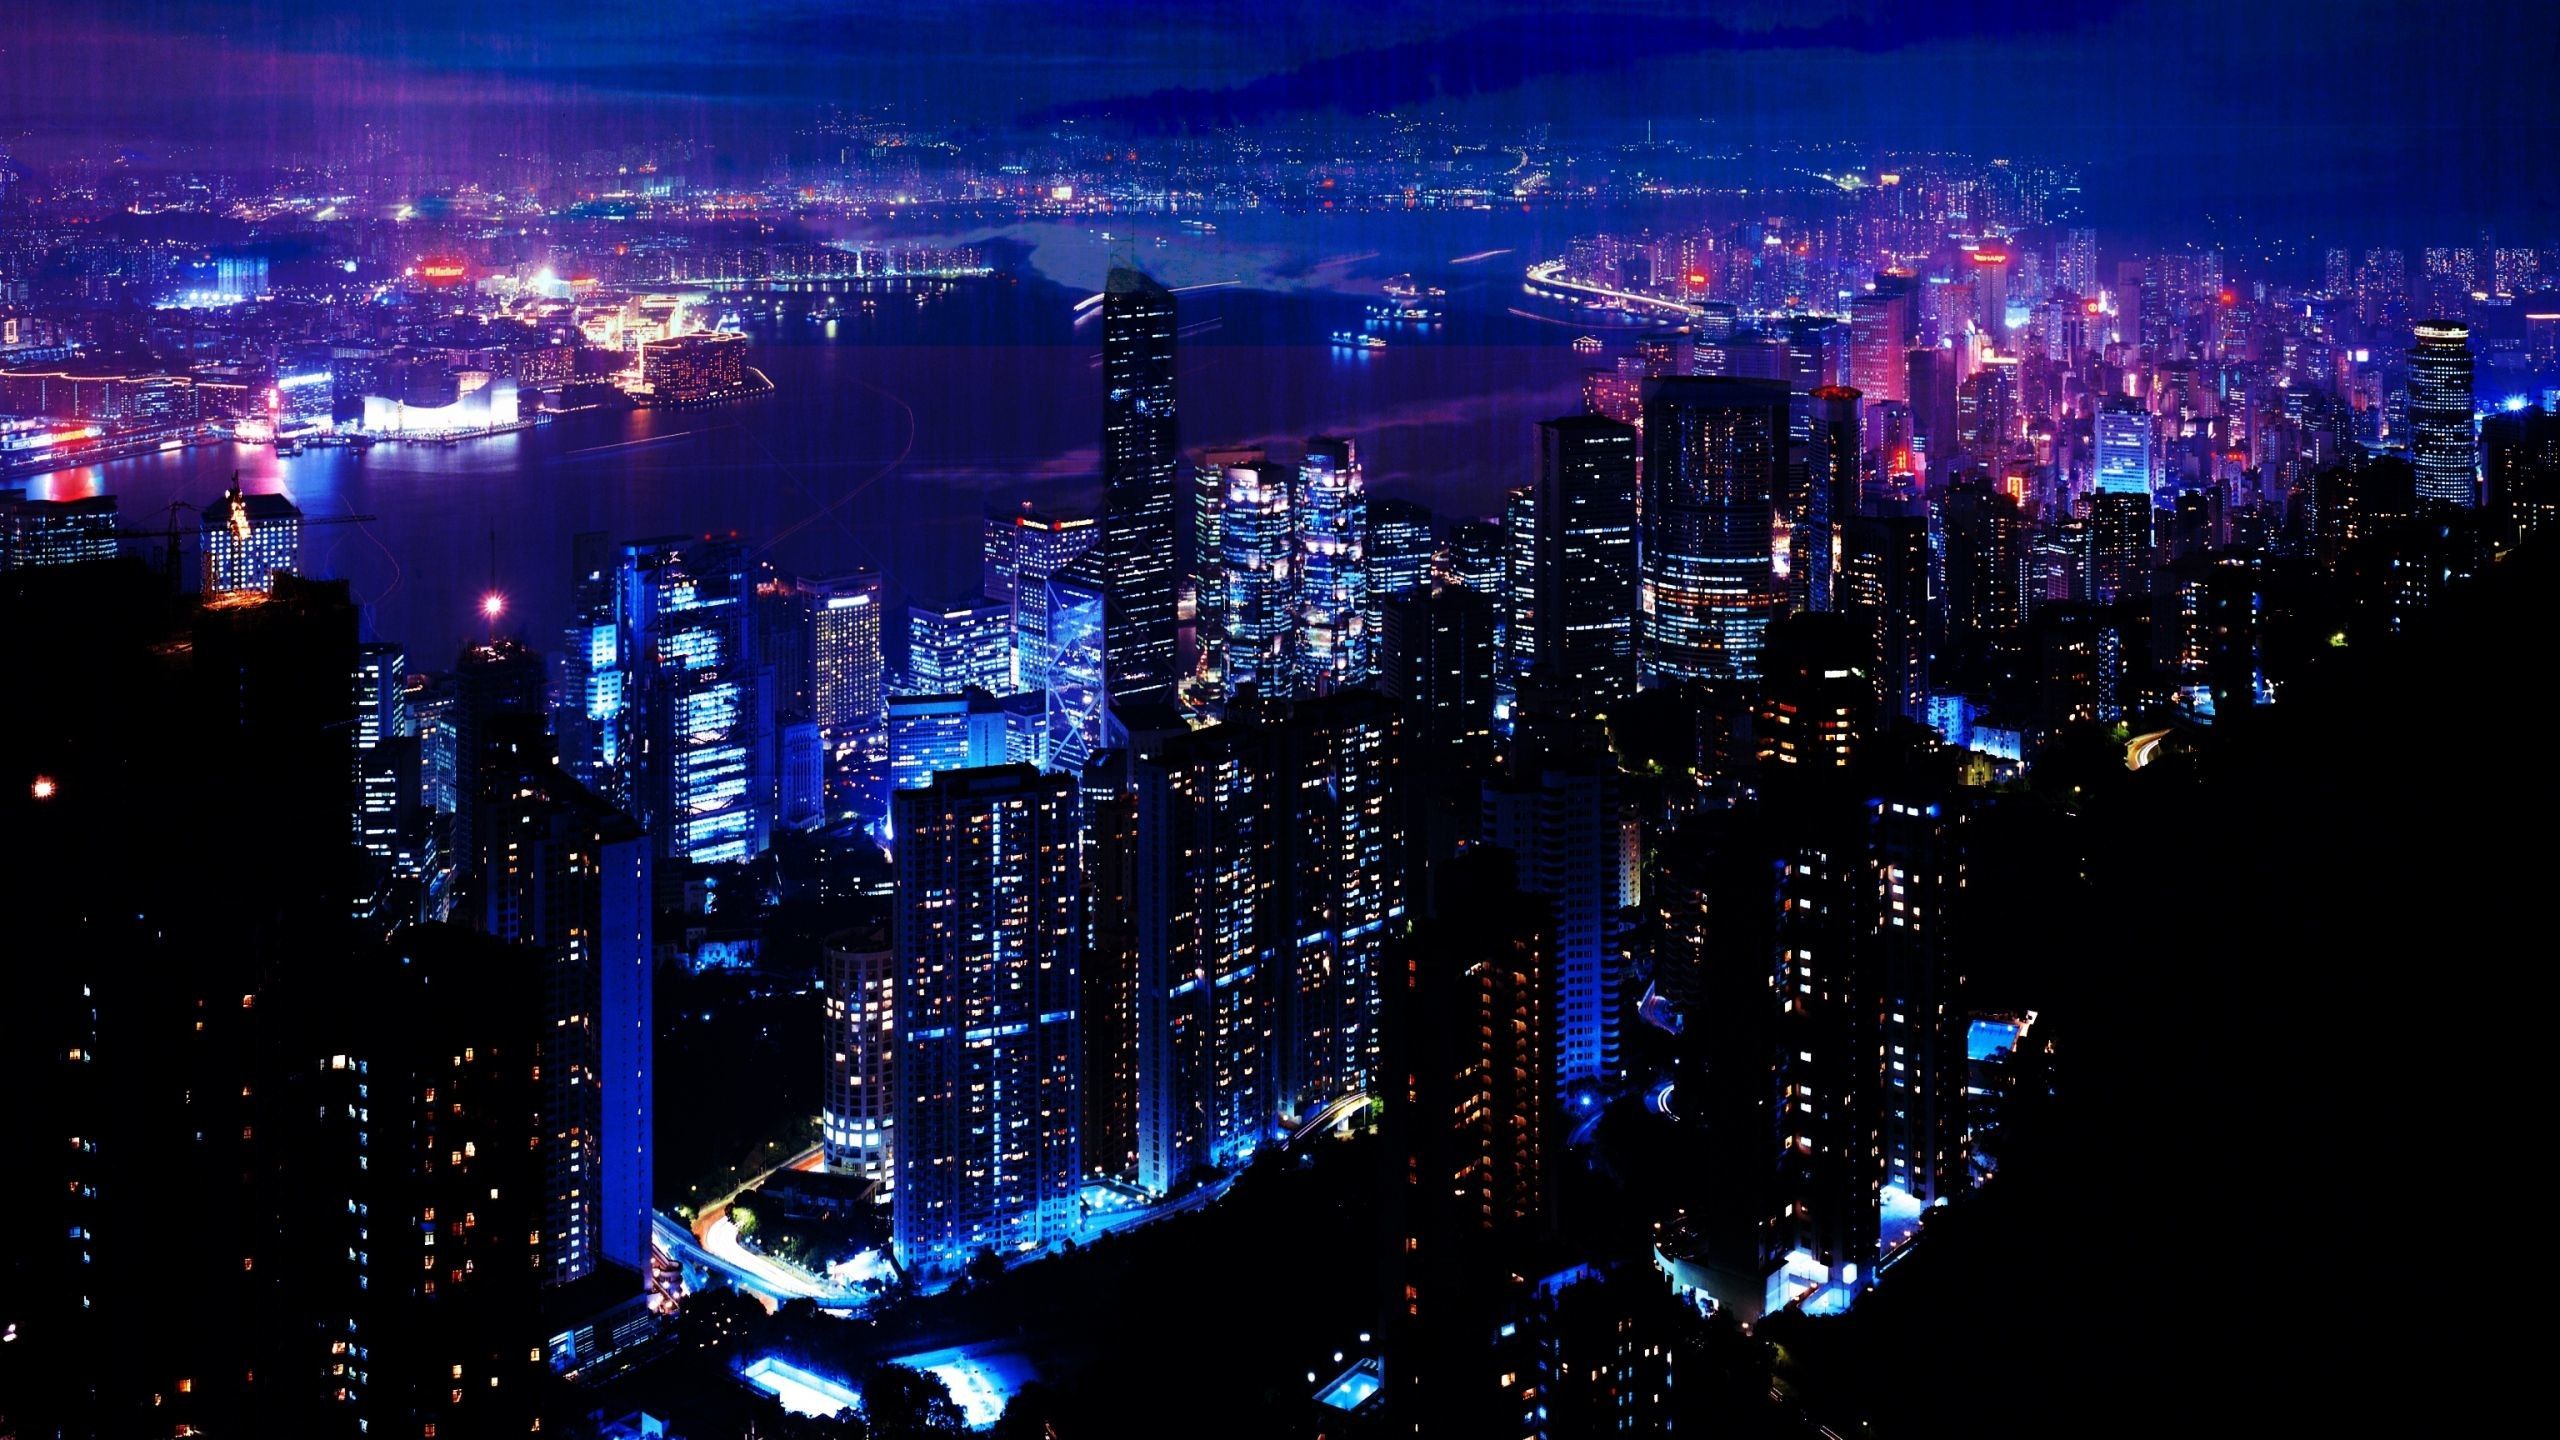 Night City: Điểm qua những hình ảnh đêm của những thành phố lớn trên thế giới, bạn sẽ ngỡ ngàng trước vẻ đẹp đầy bí ẩn. Tầm nhìn từ trên cao sẽ thay đổi hoàn toàn cách nhìn của bạn về thành phố với màu sắc đầy mê hoặc và sự lấp lánh ánh đèn.